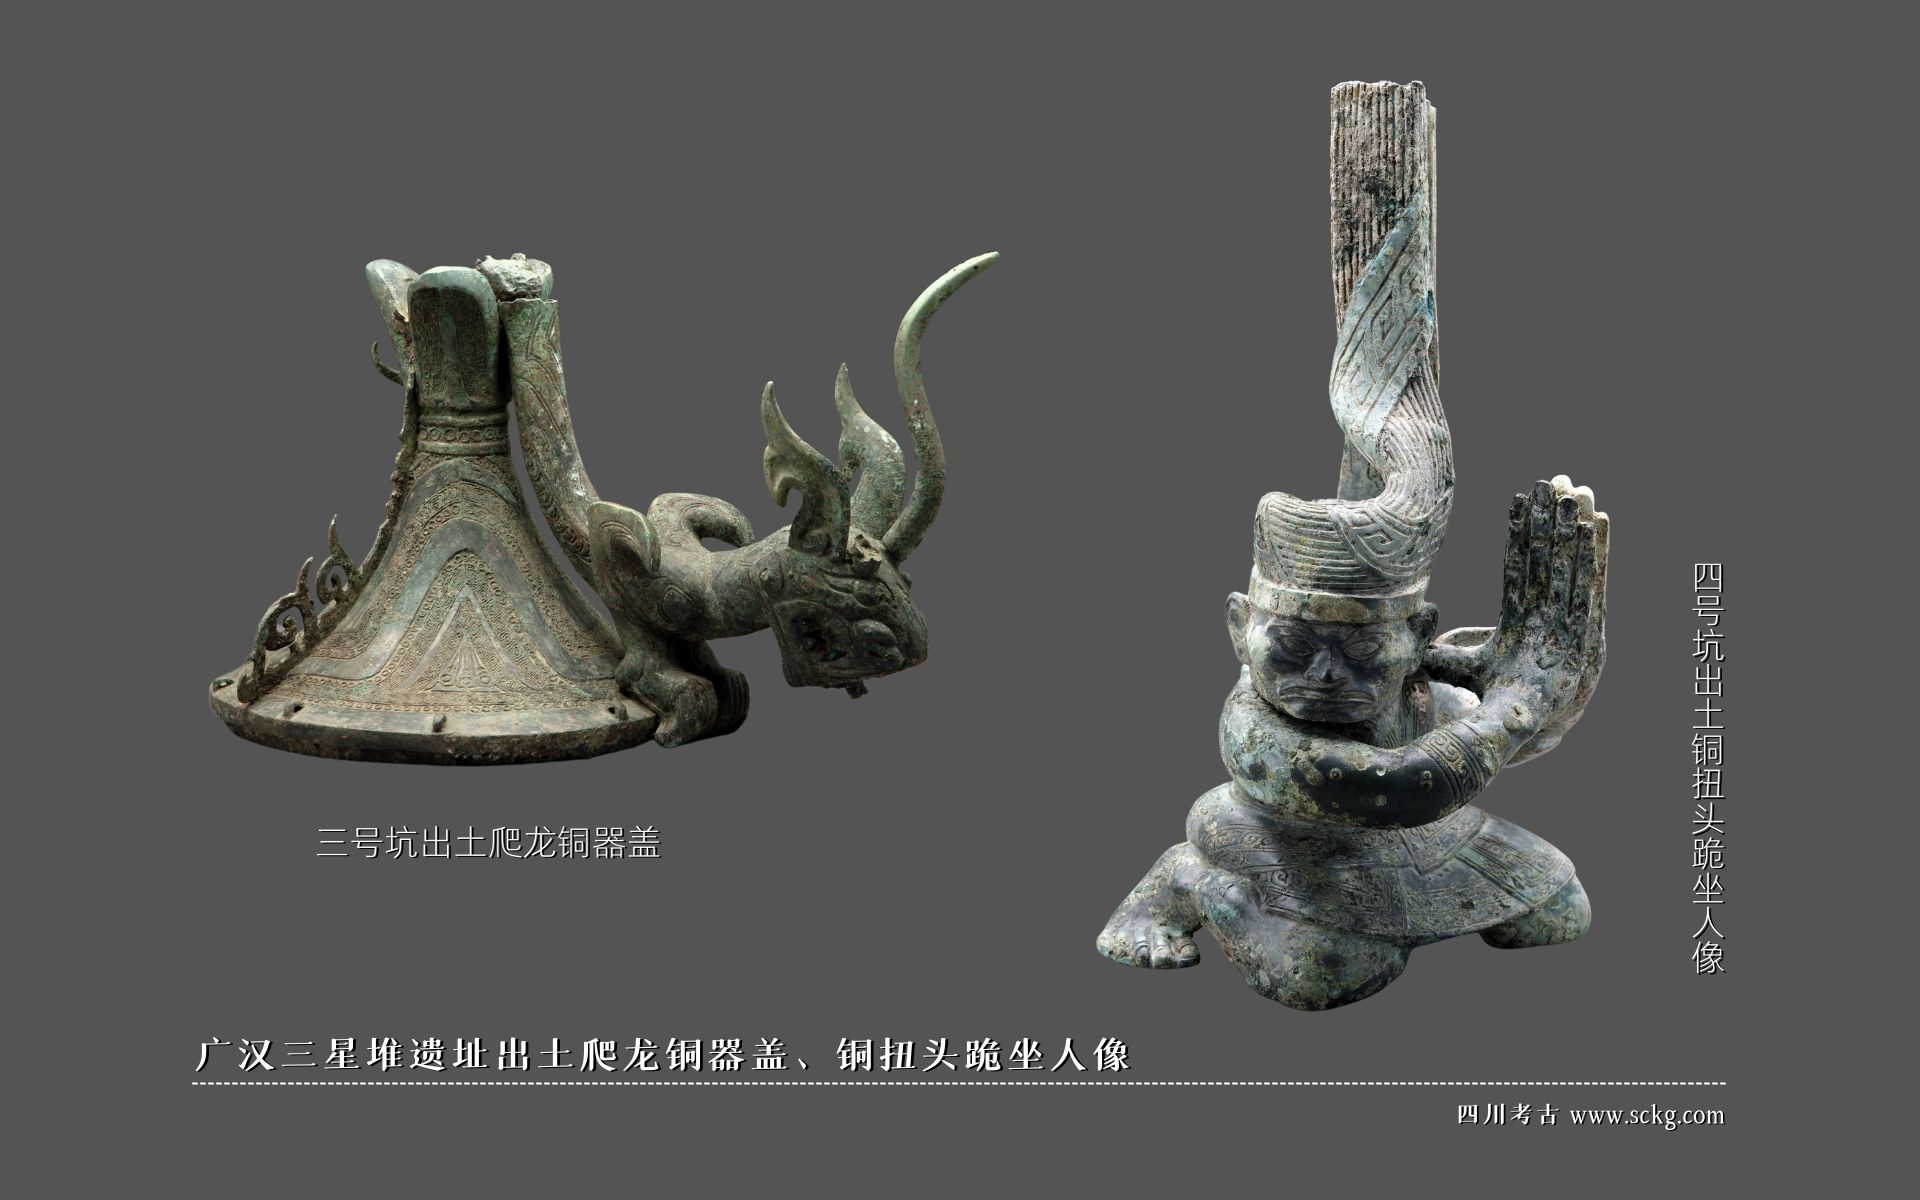 广汉三星堆遗址出土爬龙铜器盖、铜扭头跪坐人像.jpg